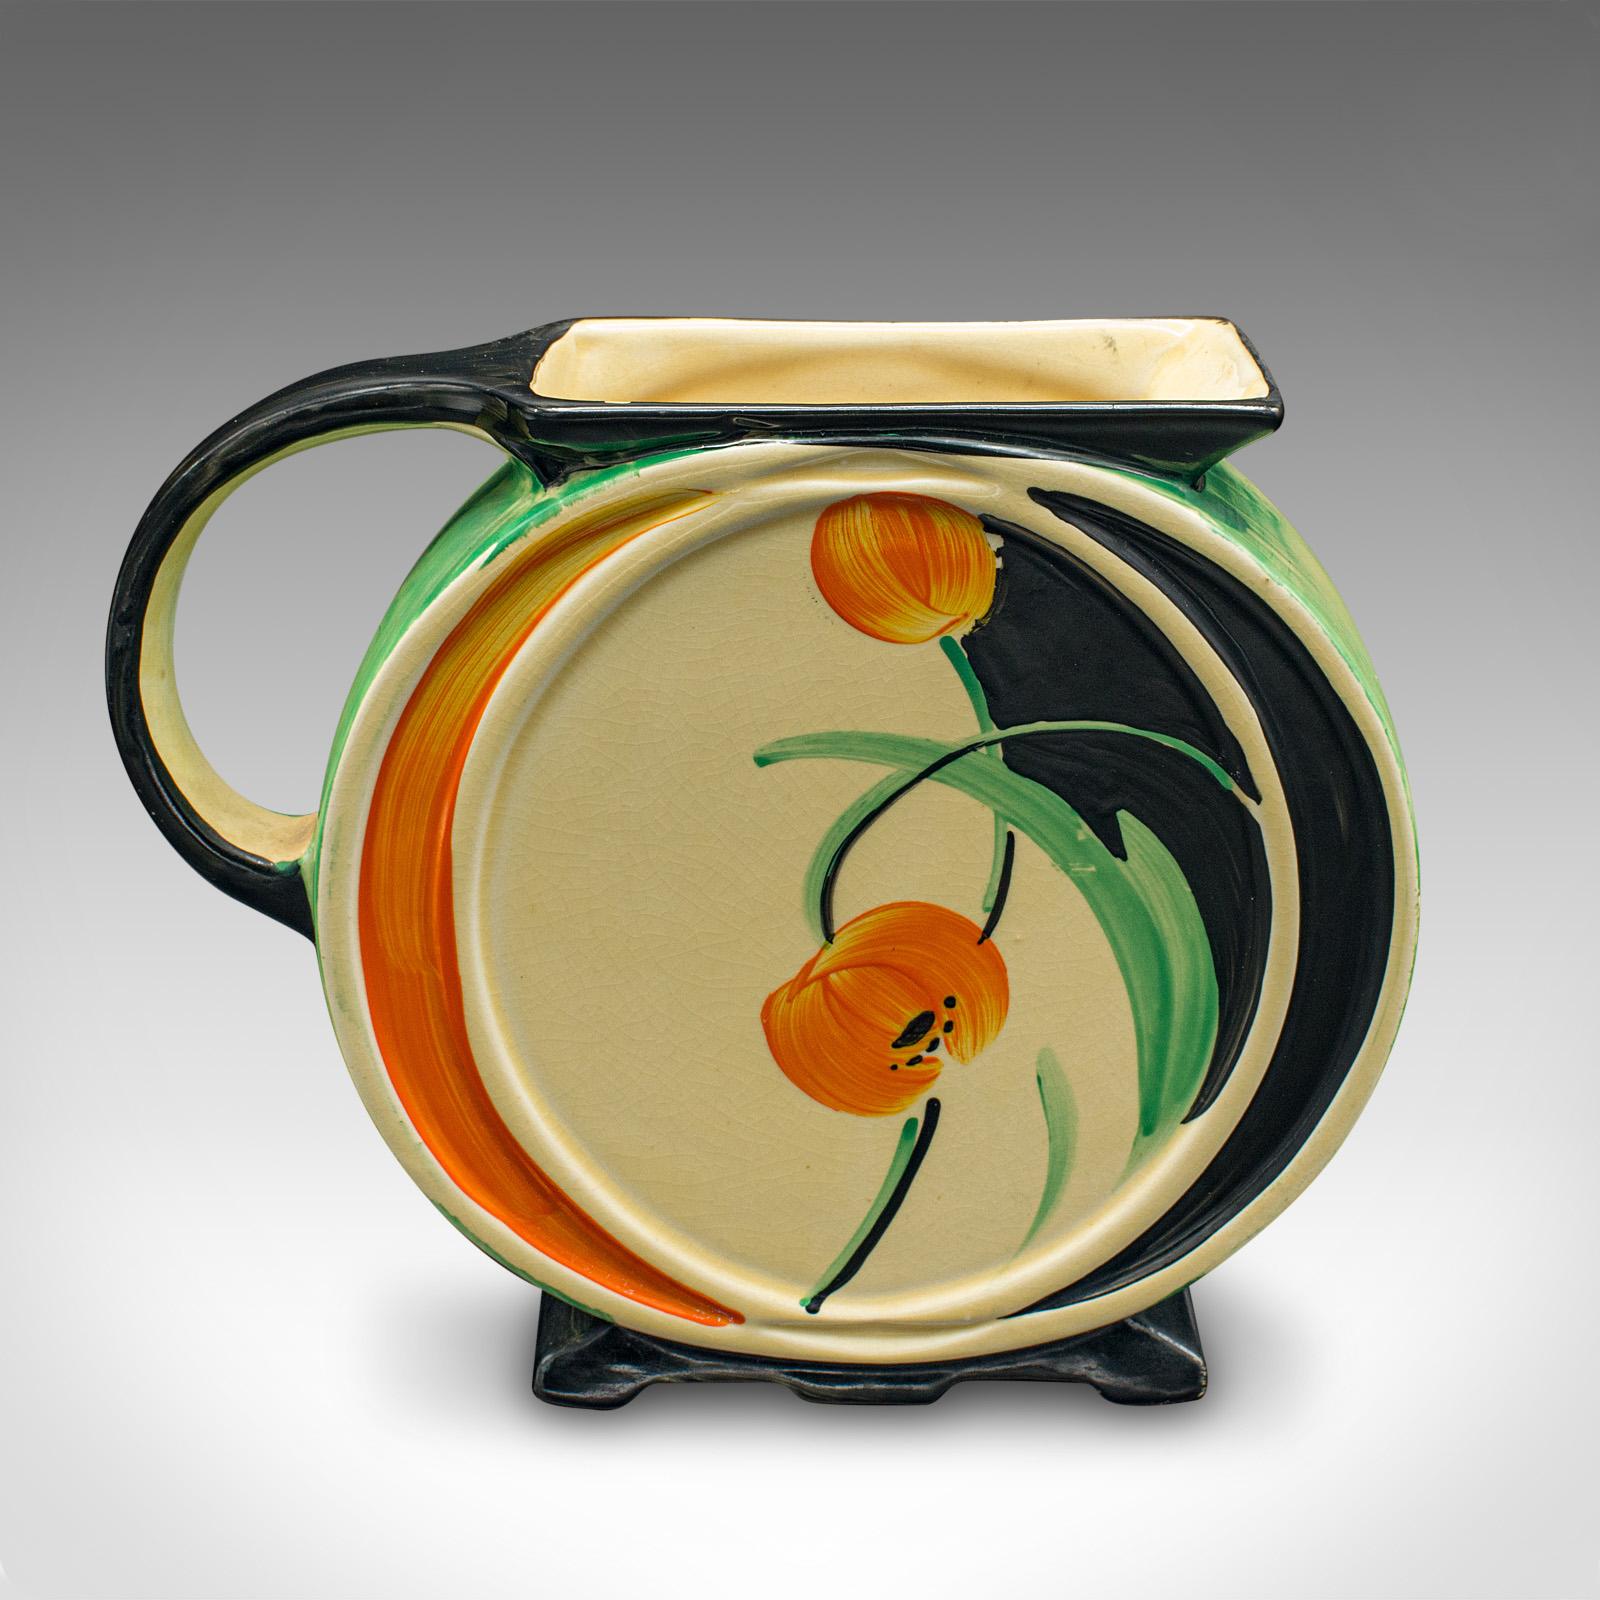 Il s'agit d'une cruche de présentation vintage. Vase anglais en céramique pour fleurs séchées, datant du début du 20e siècle, vers 1930.

Une forme fascinante et inhabituelle avec un décor joyeux
Présente une patine vieillie souhaitable sur toute sa